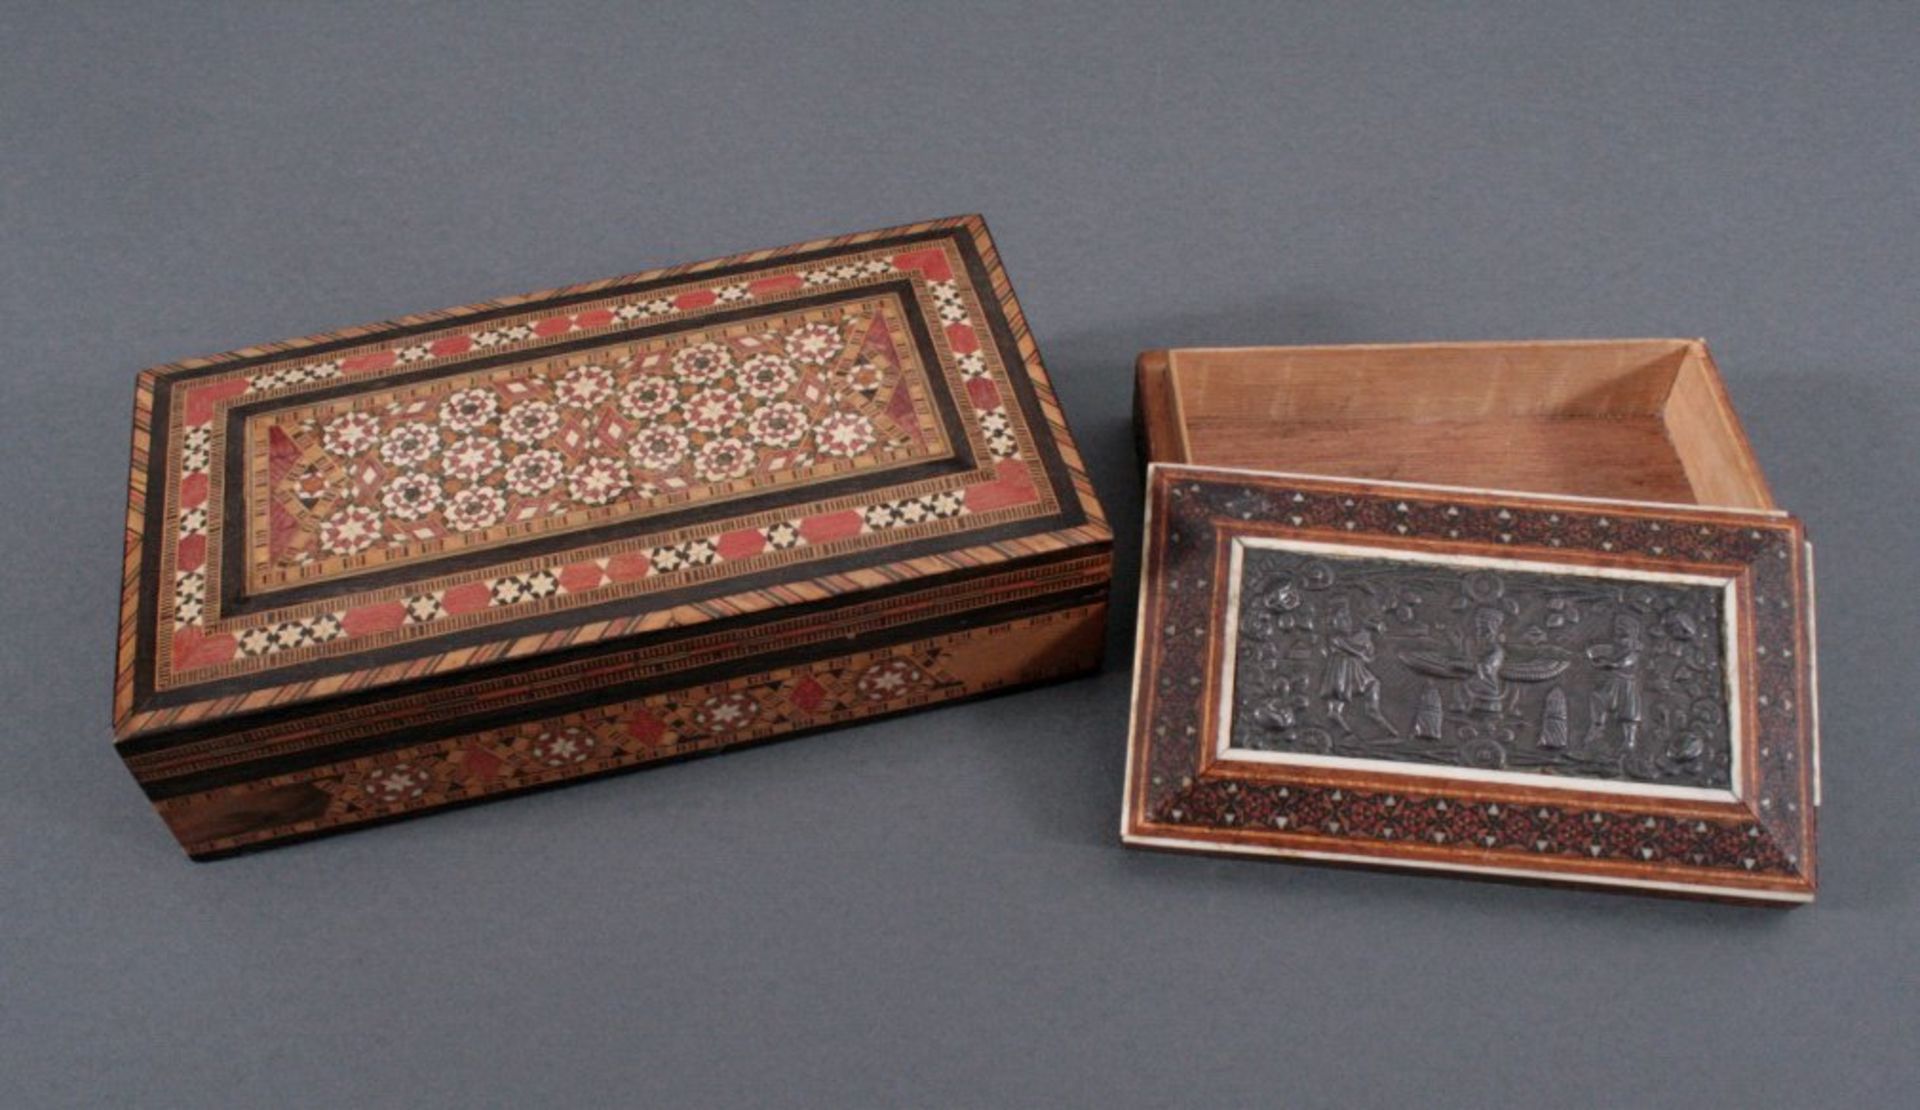 2 Deckelschatullen, Persien um 1900Holzschatullen mit Intarisen, einmal verziert mit